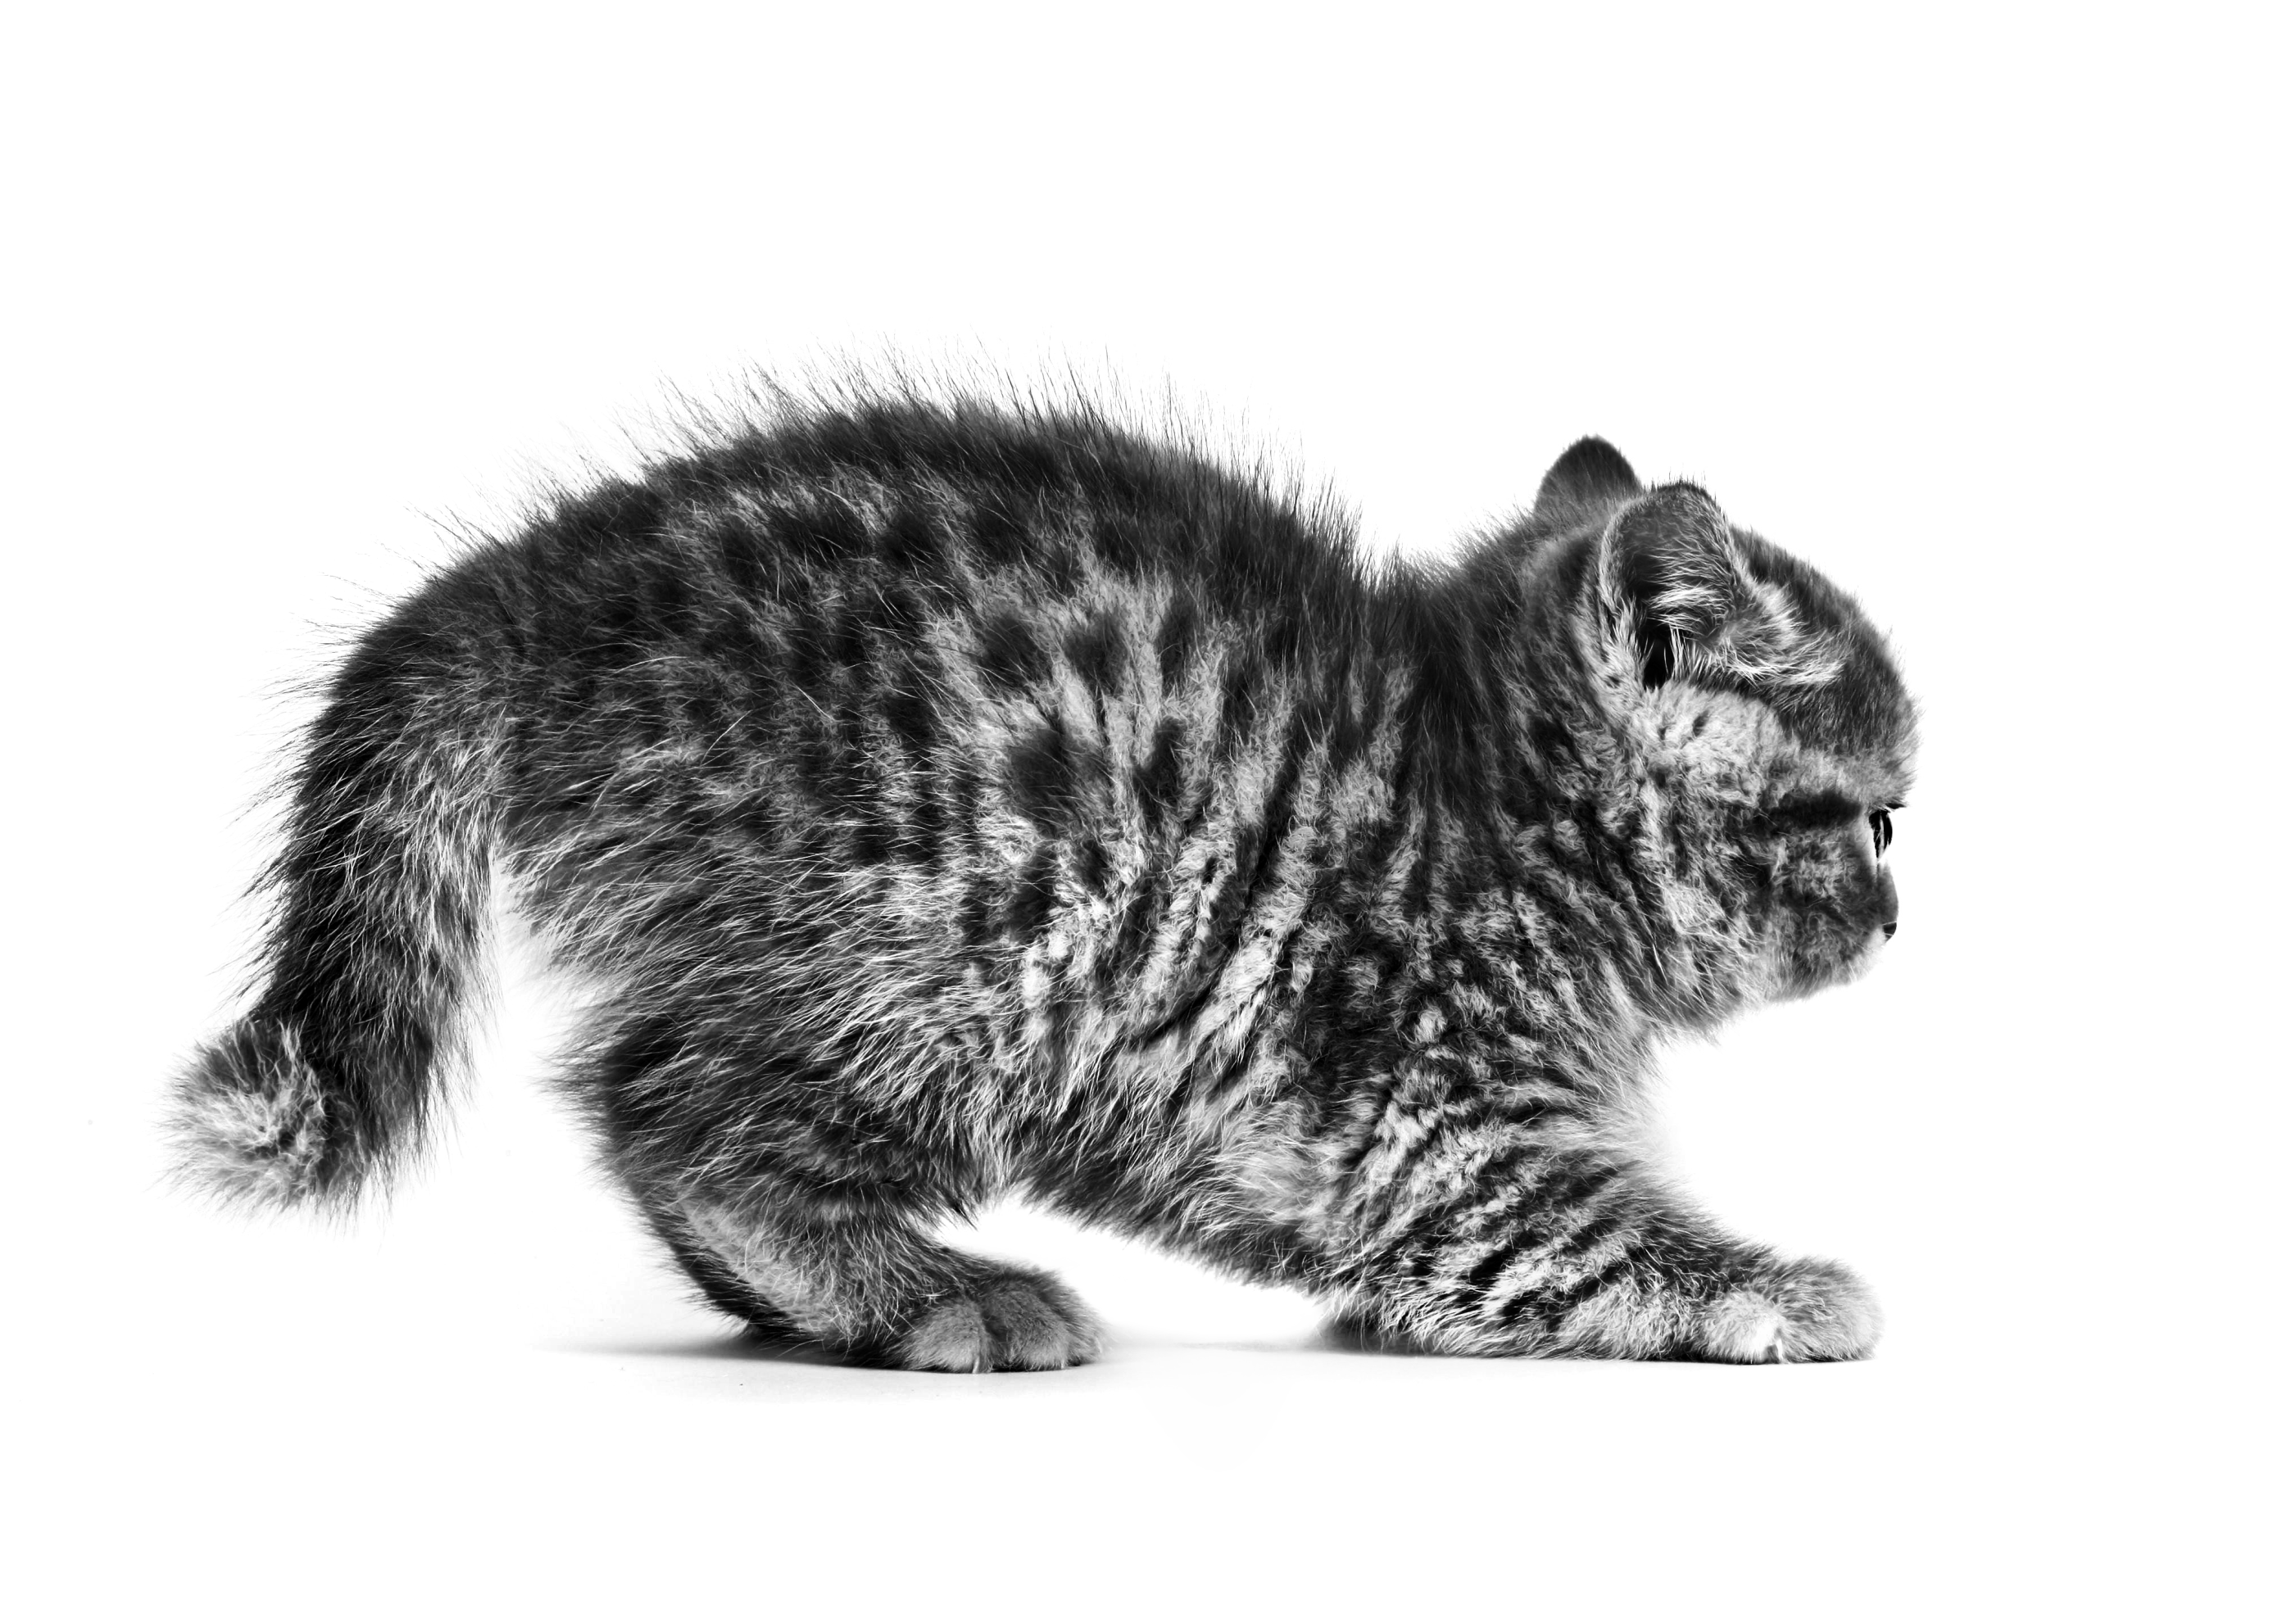 Britse Korthaar kitten in zwart-wit op een witte achtergrond